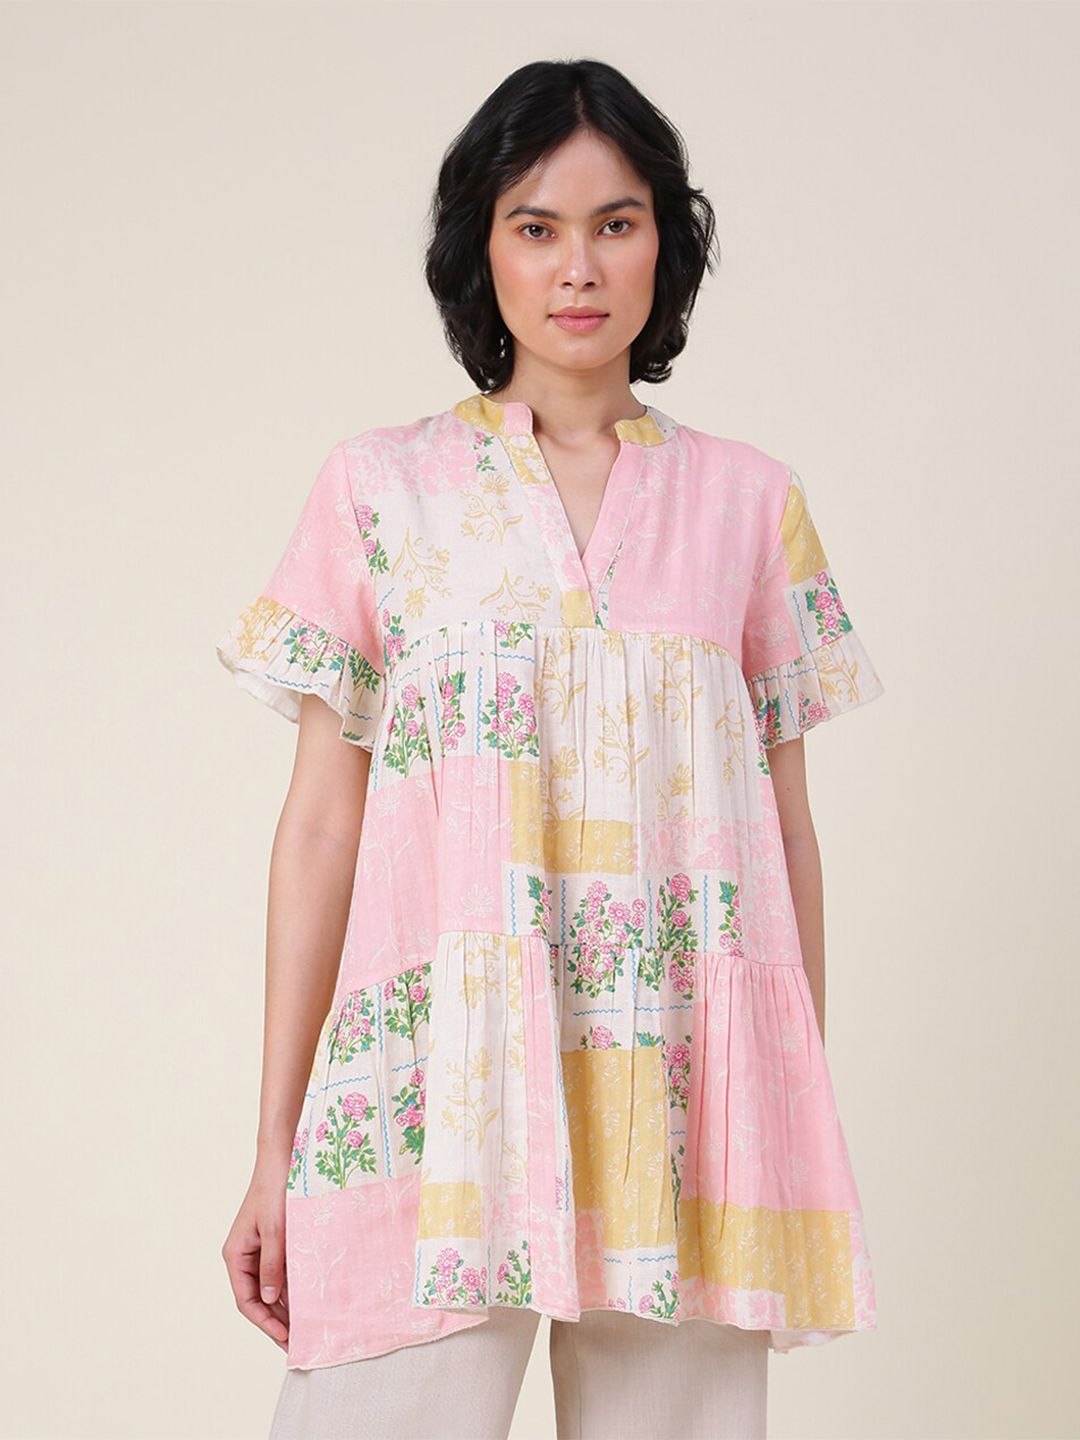 Fabindia Beige & Pink Mandarin Collar Printed Tunic Price in India